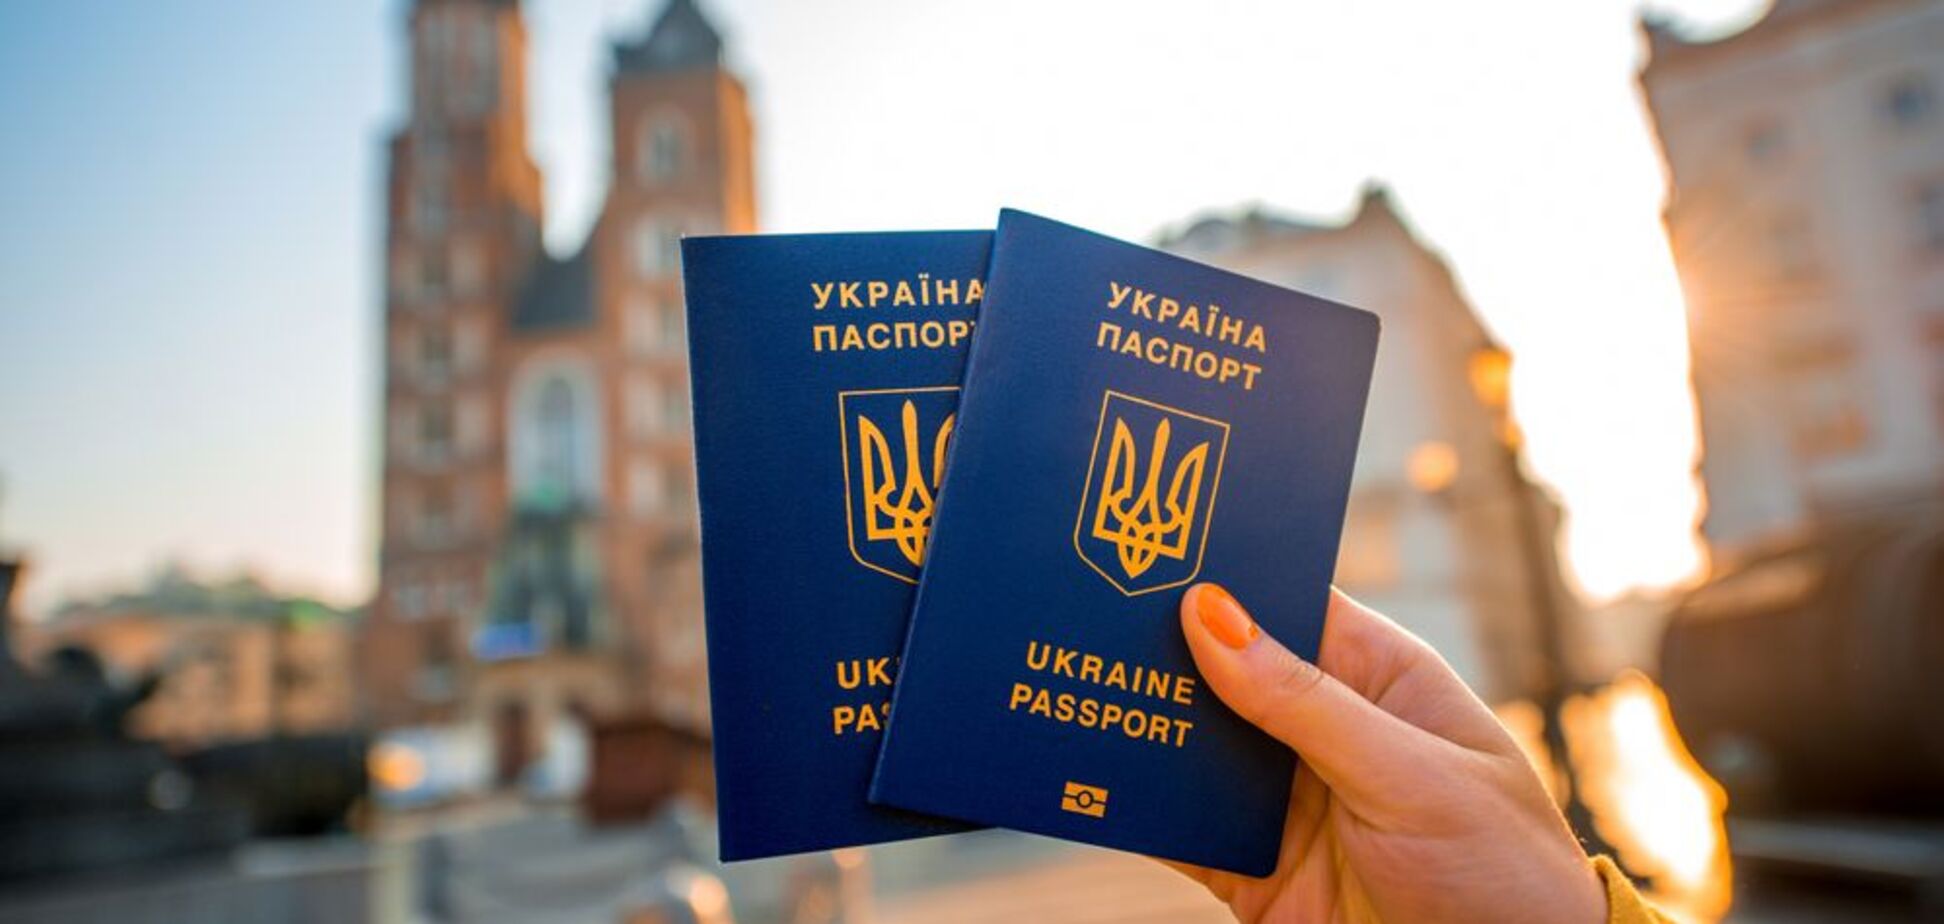 Опередили Россию: Украина вышла в лидеры рейтинга паспортов